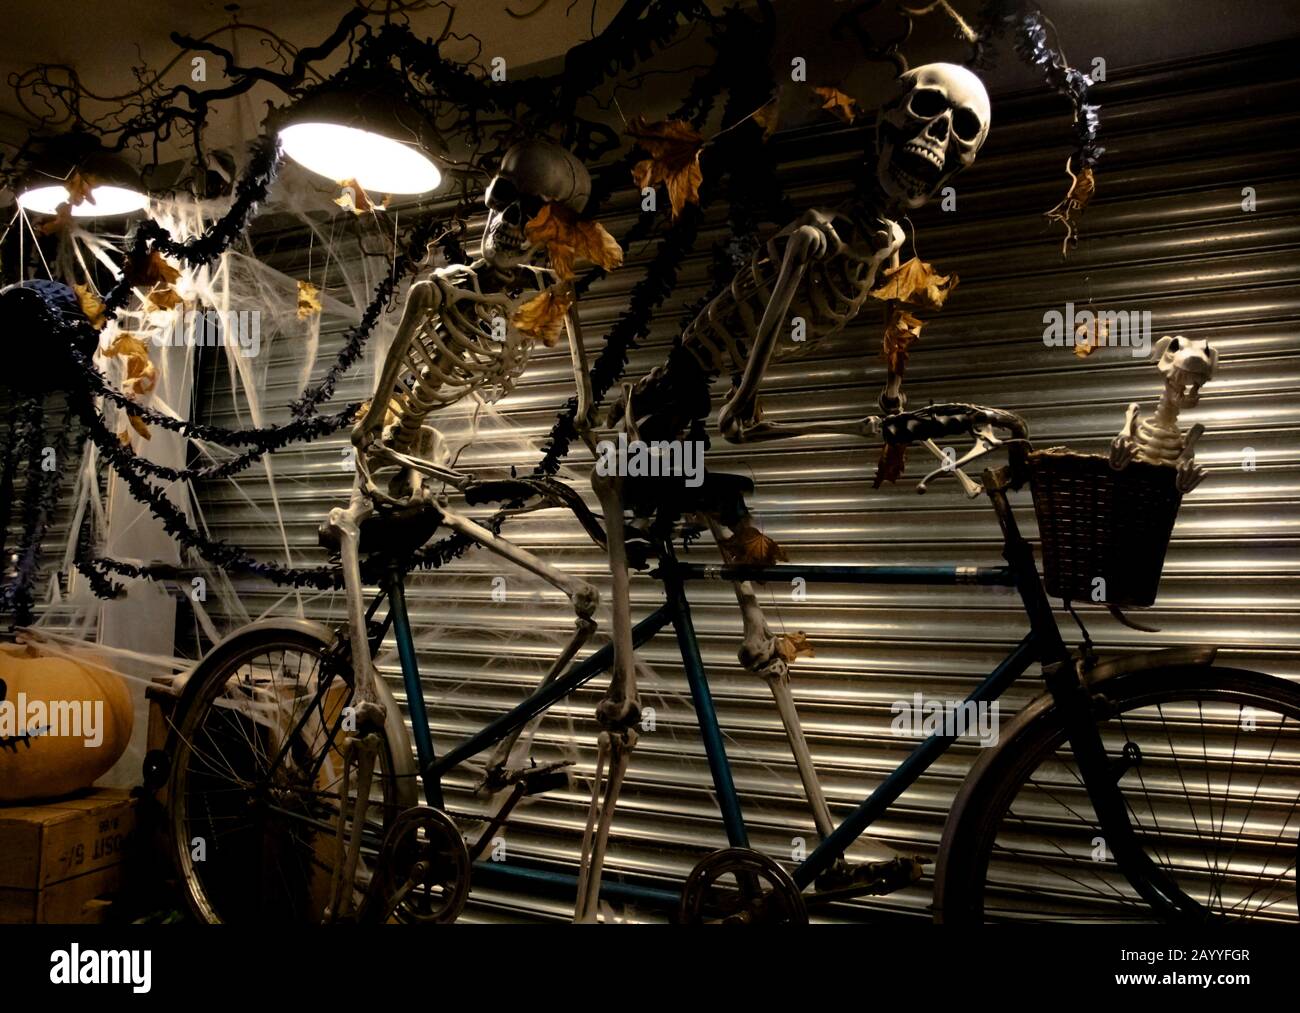 Zwei Skelette auf einem Tandem, Bicicicle Droitwich Spa, Worcester, England, Großbritannien, 10.02.2019, Ghost Tours, zwei Skelette Reiten auf einem Tandemfahrrad Stockfoto